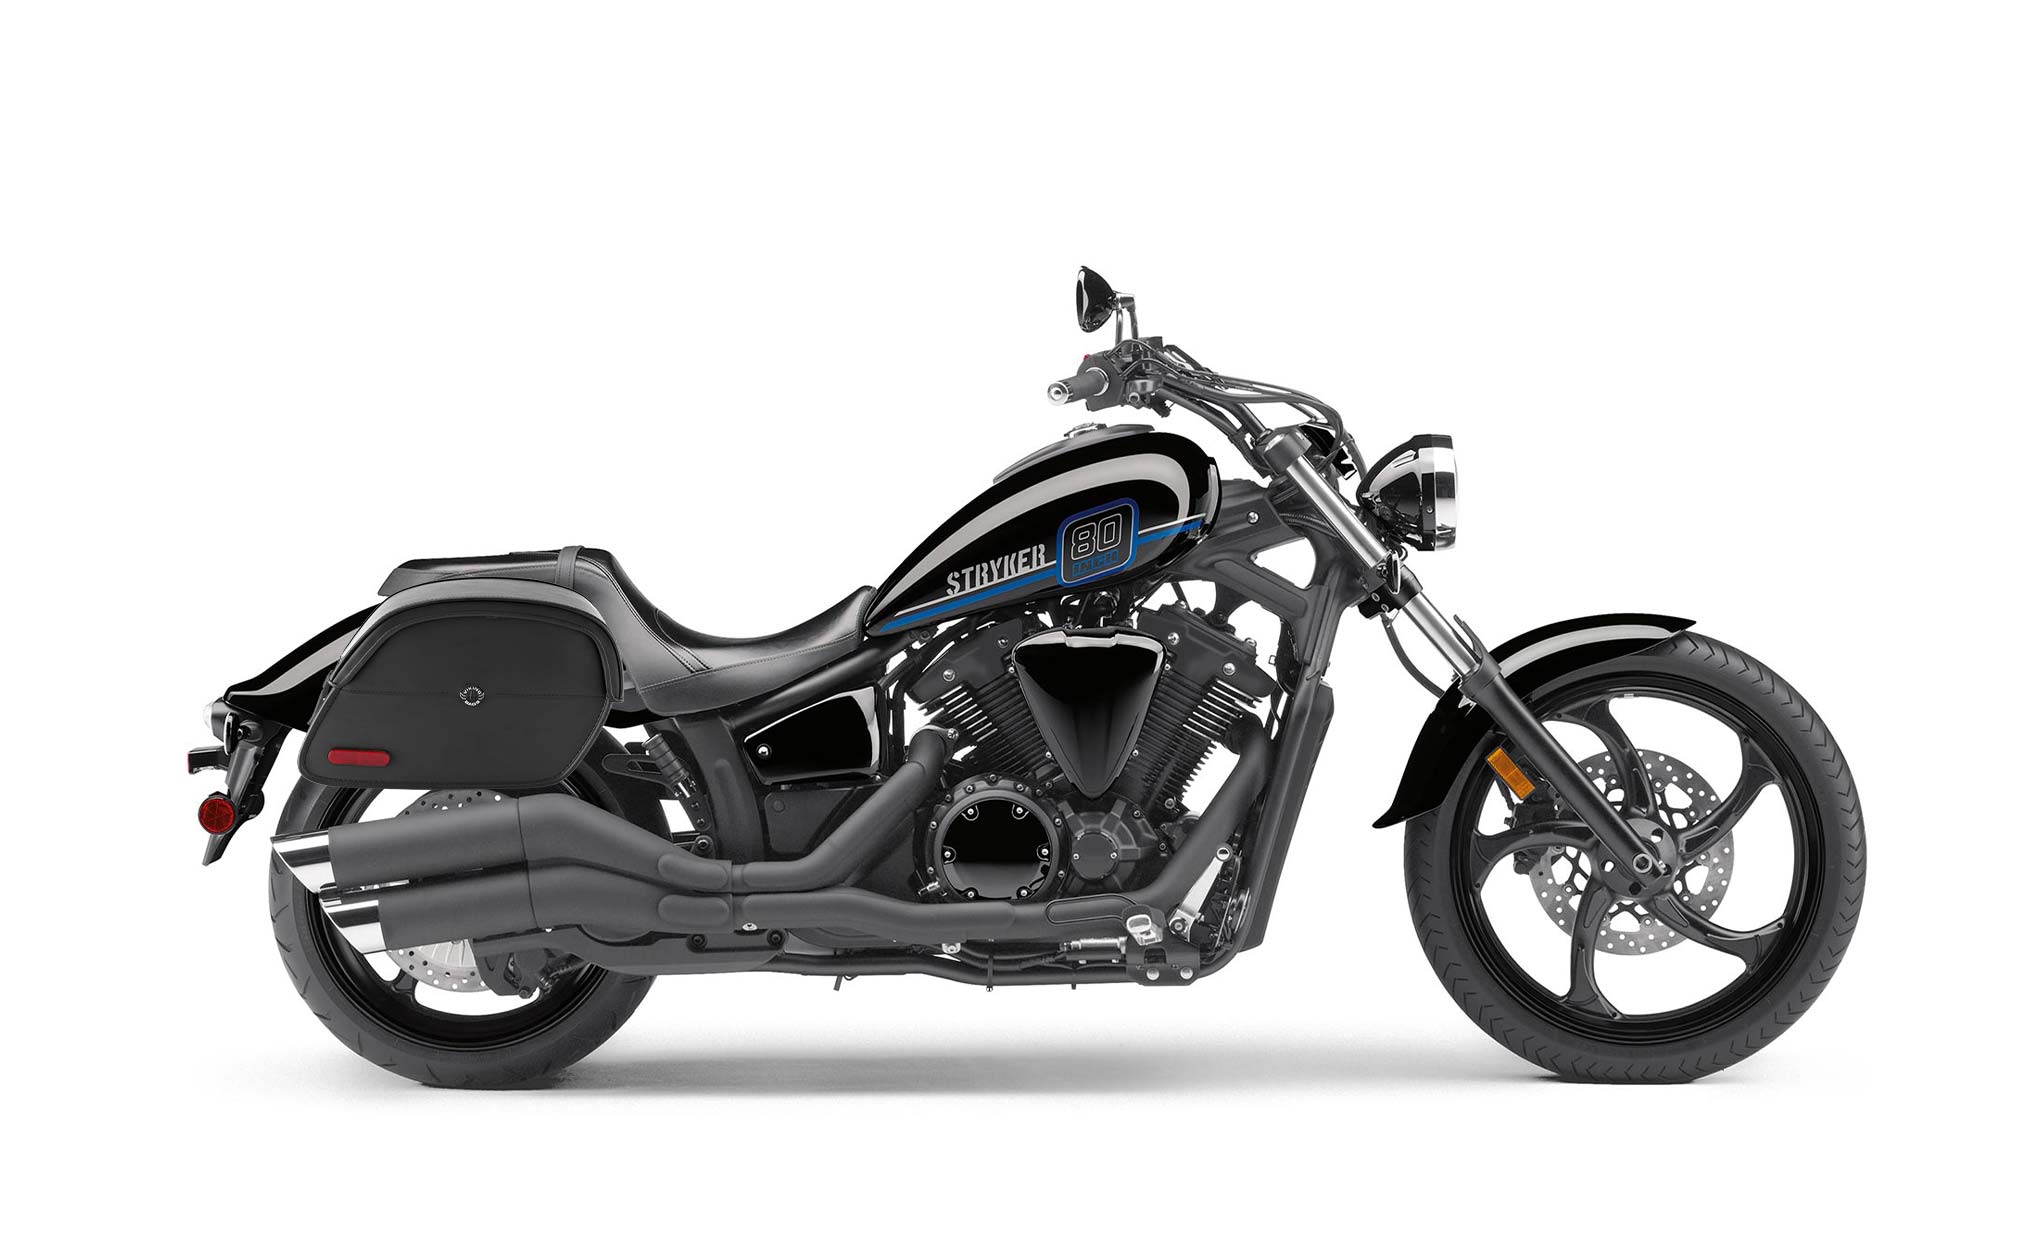 Viking California Large Yamaha Stryker Leather Motorcycle Saddlebags on Bike Photo @expand